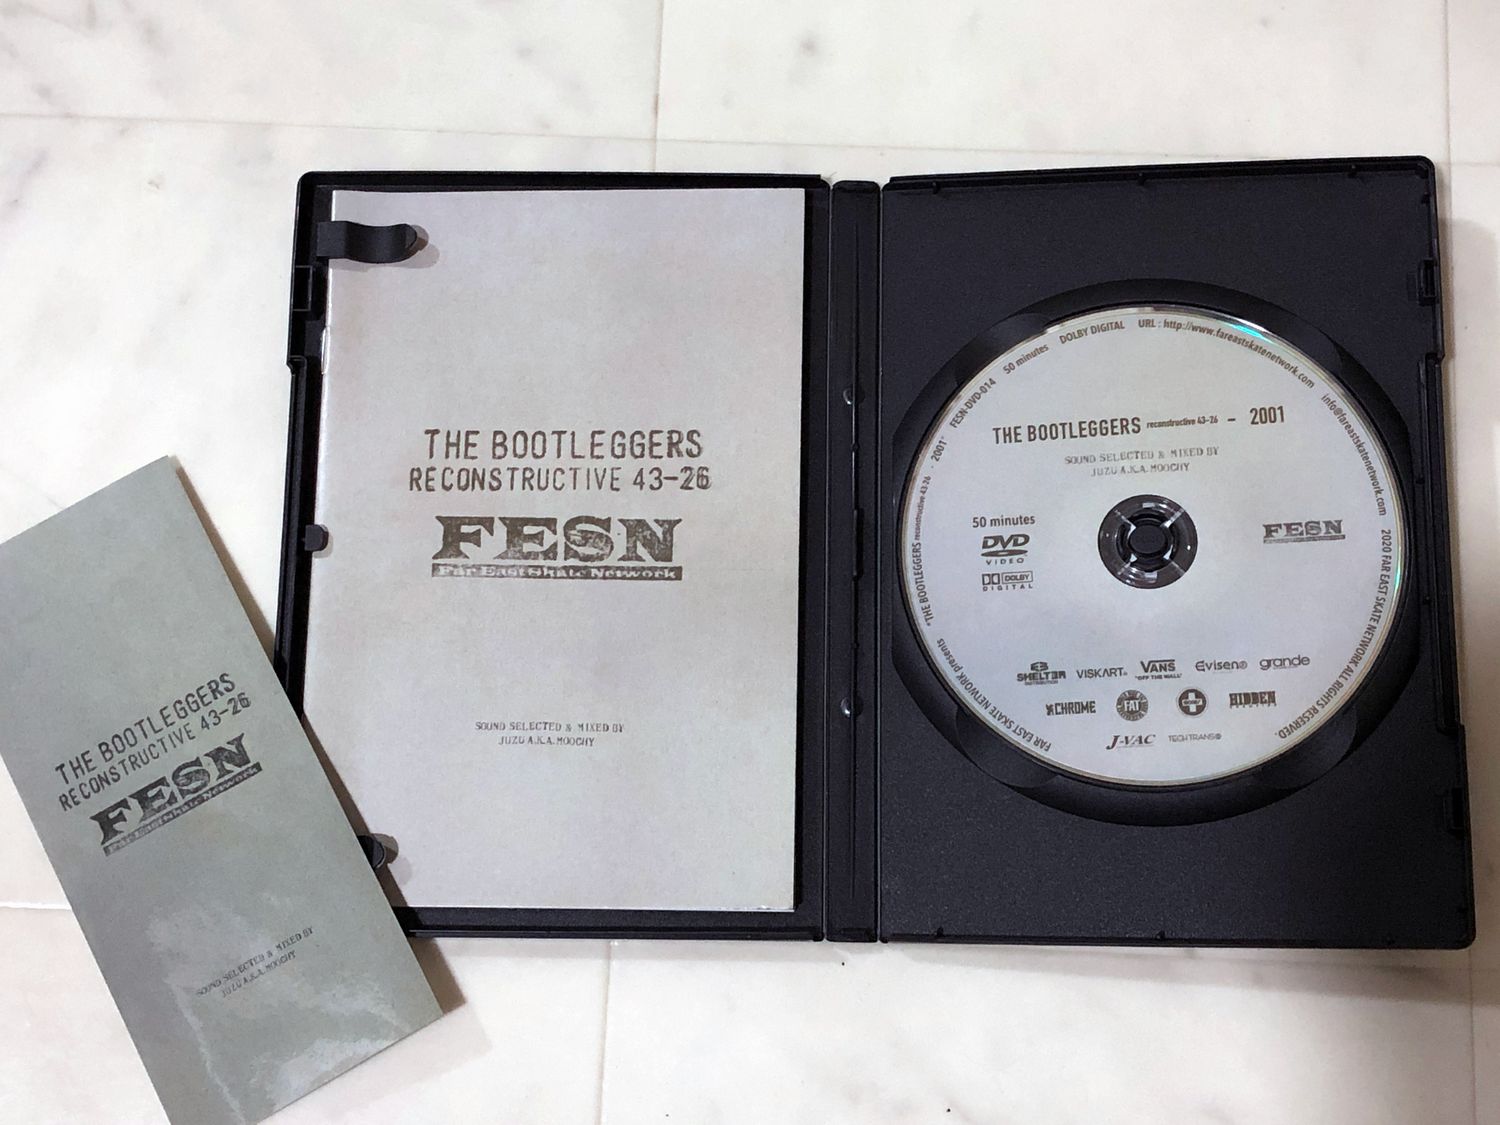 画像: FESN - THE BOOTLEGGERS reconstructive 43-26 - DVD